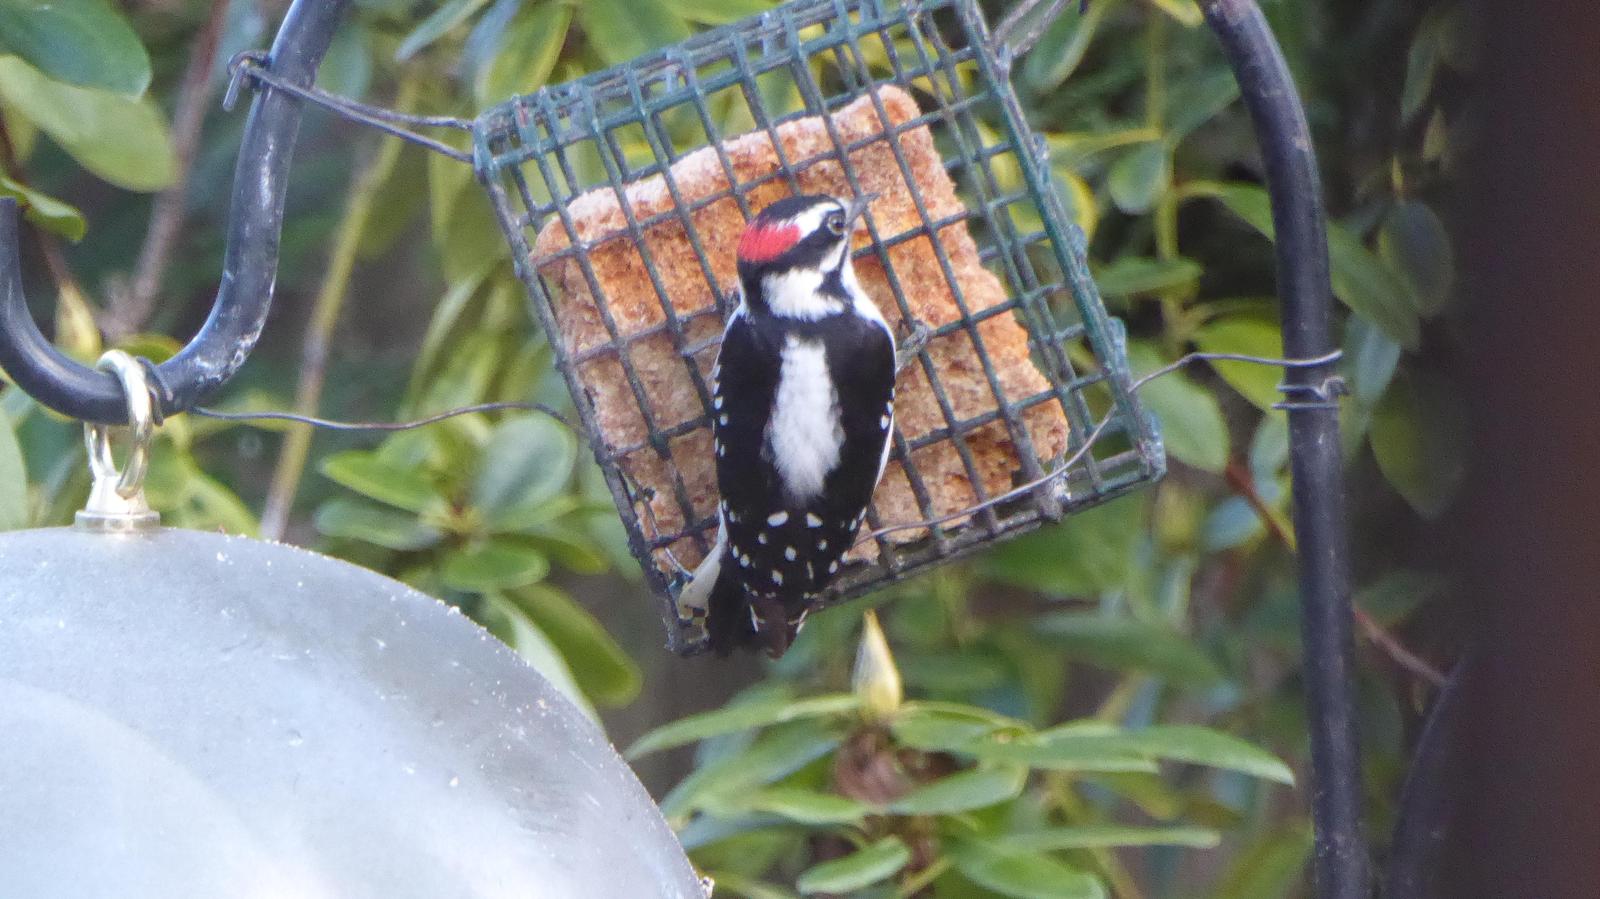 Downy Woodpecker Photo by Daliel Leite